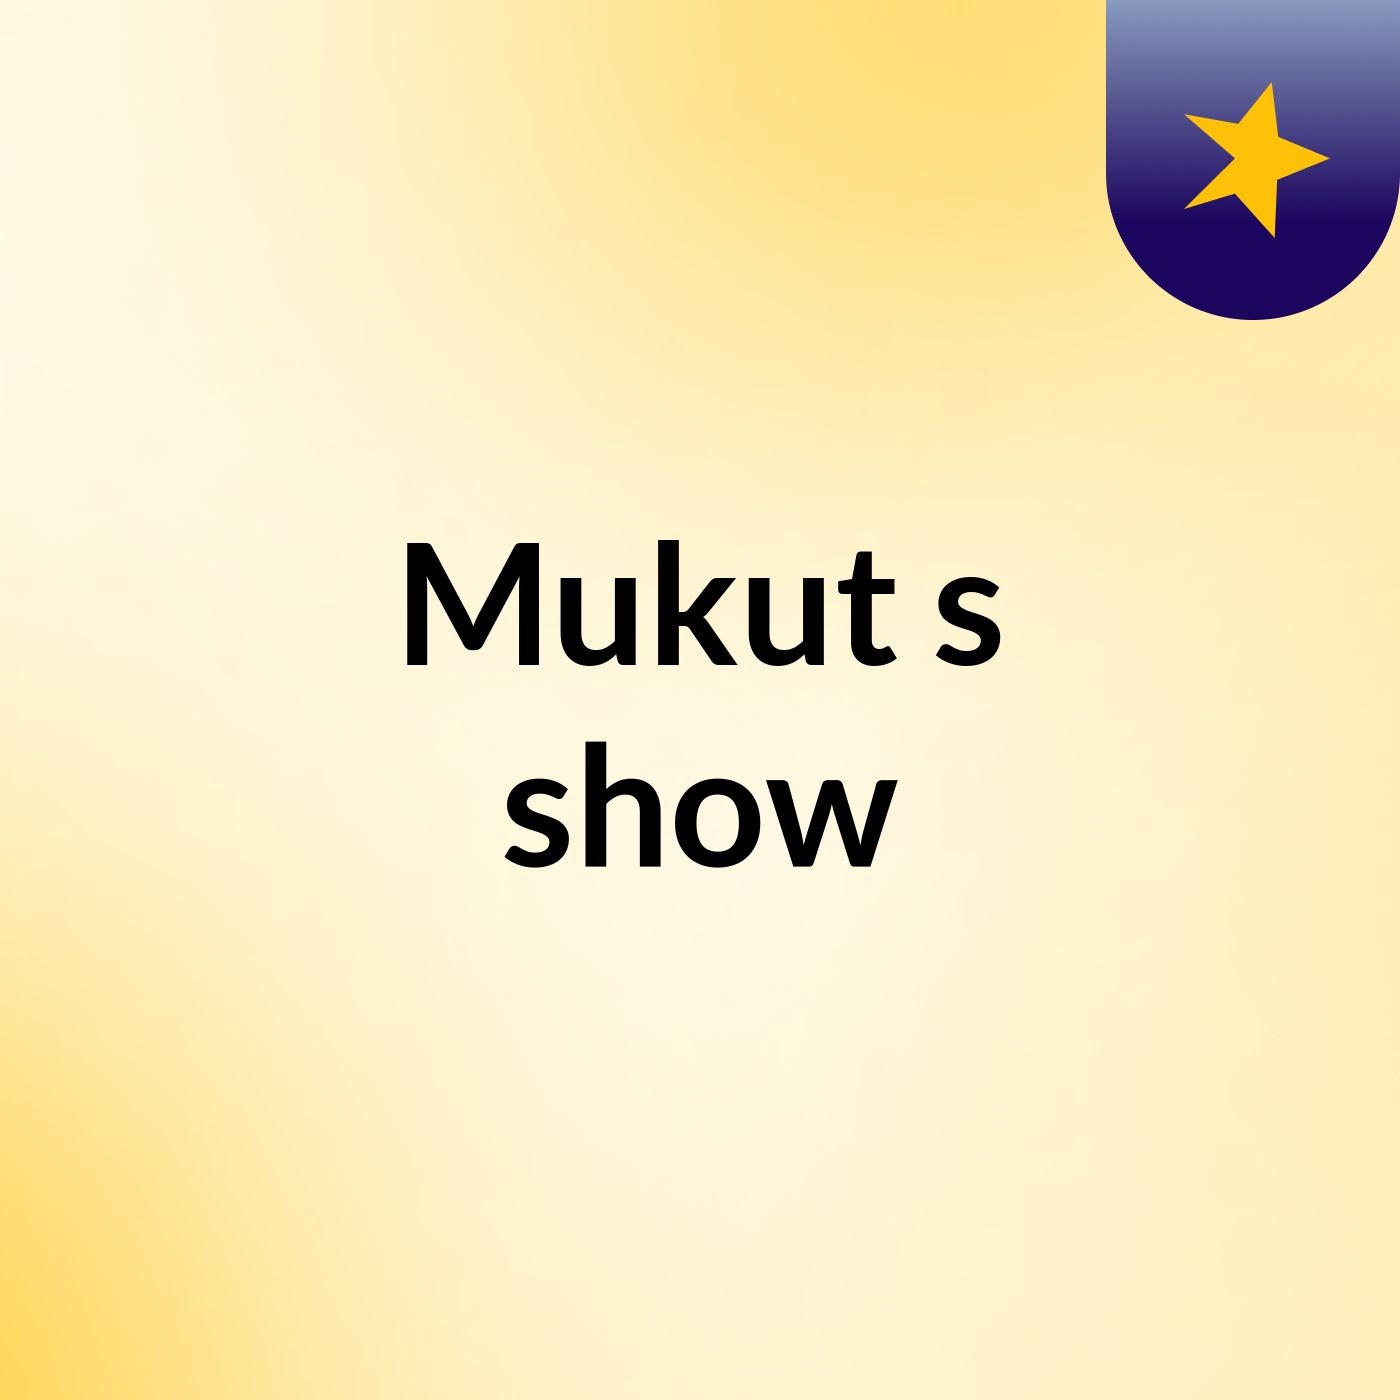 Mukut's show